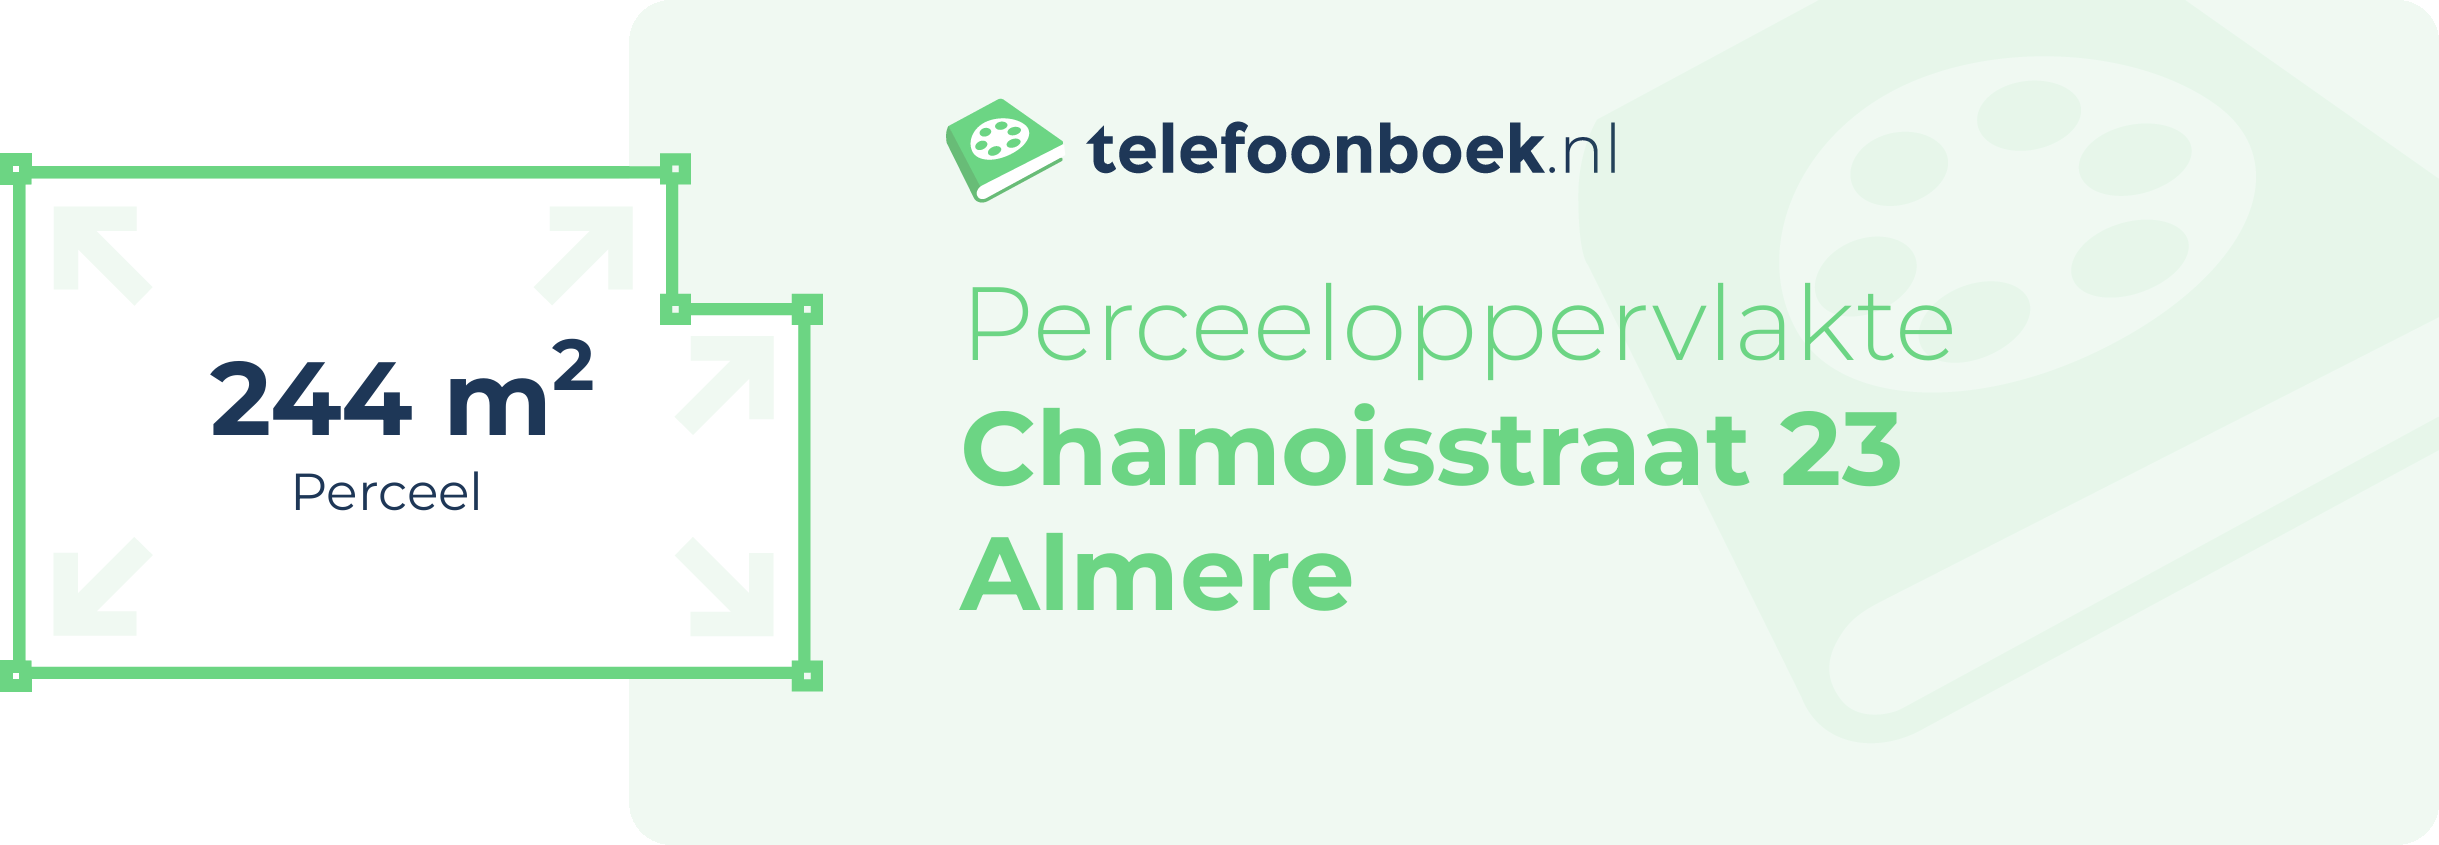 Perceeloppervlakte Chamoisstraat 23 Almere